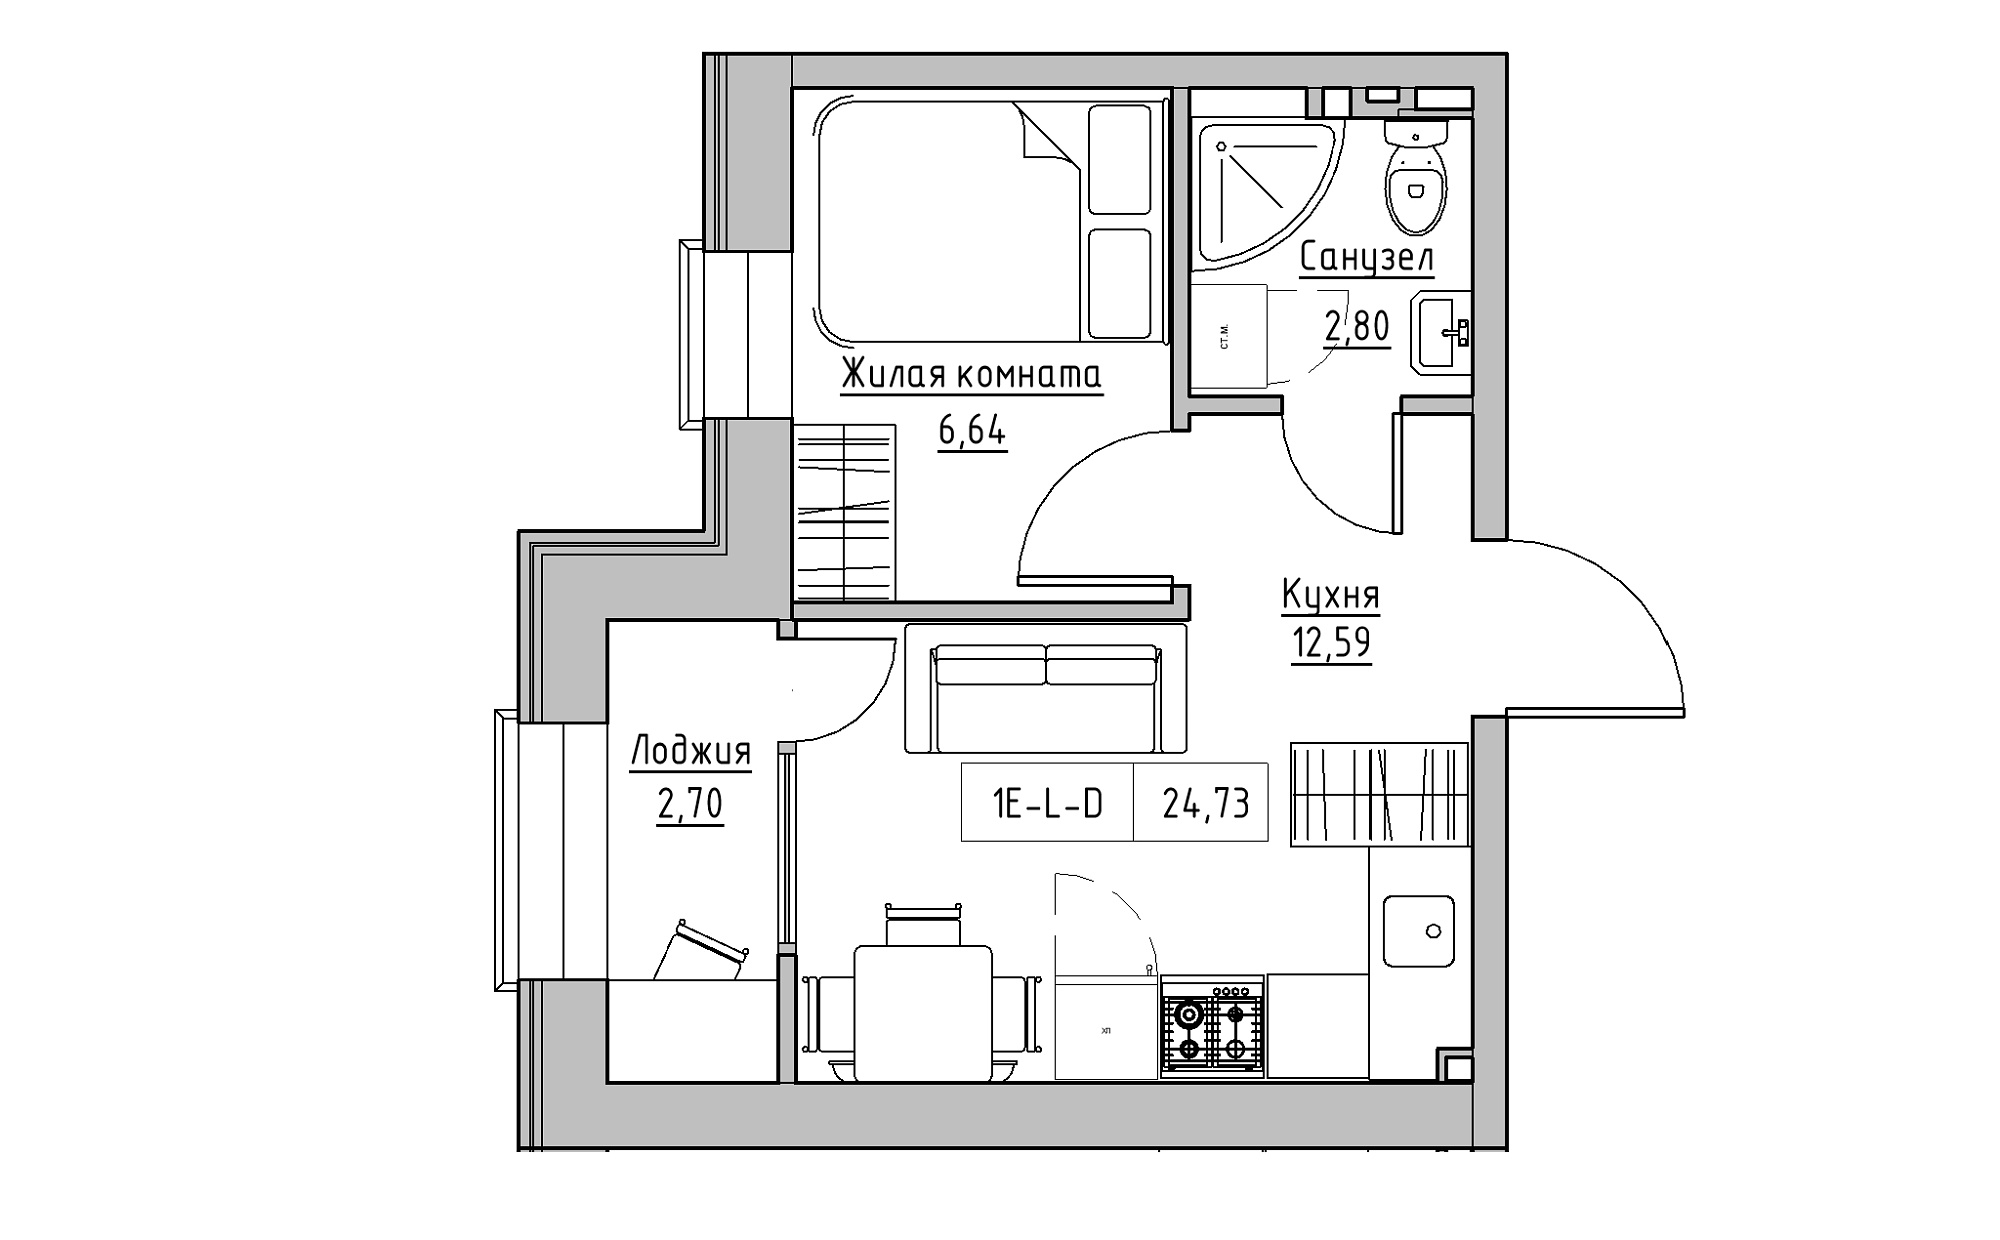 Планировка 1-к квартира площей 24.73м2, KS-022-02/0013.